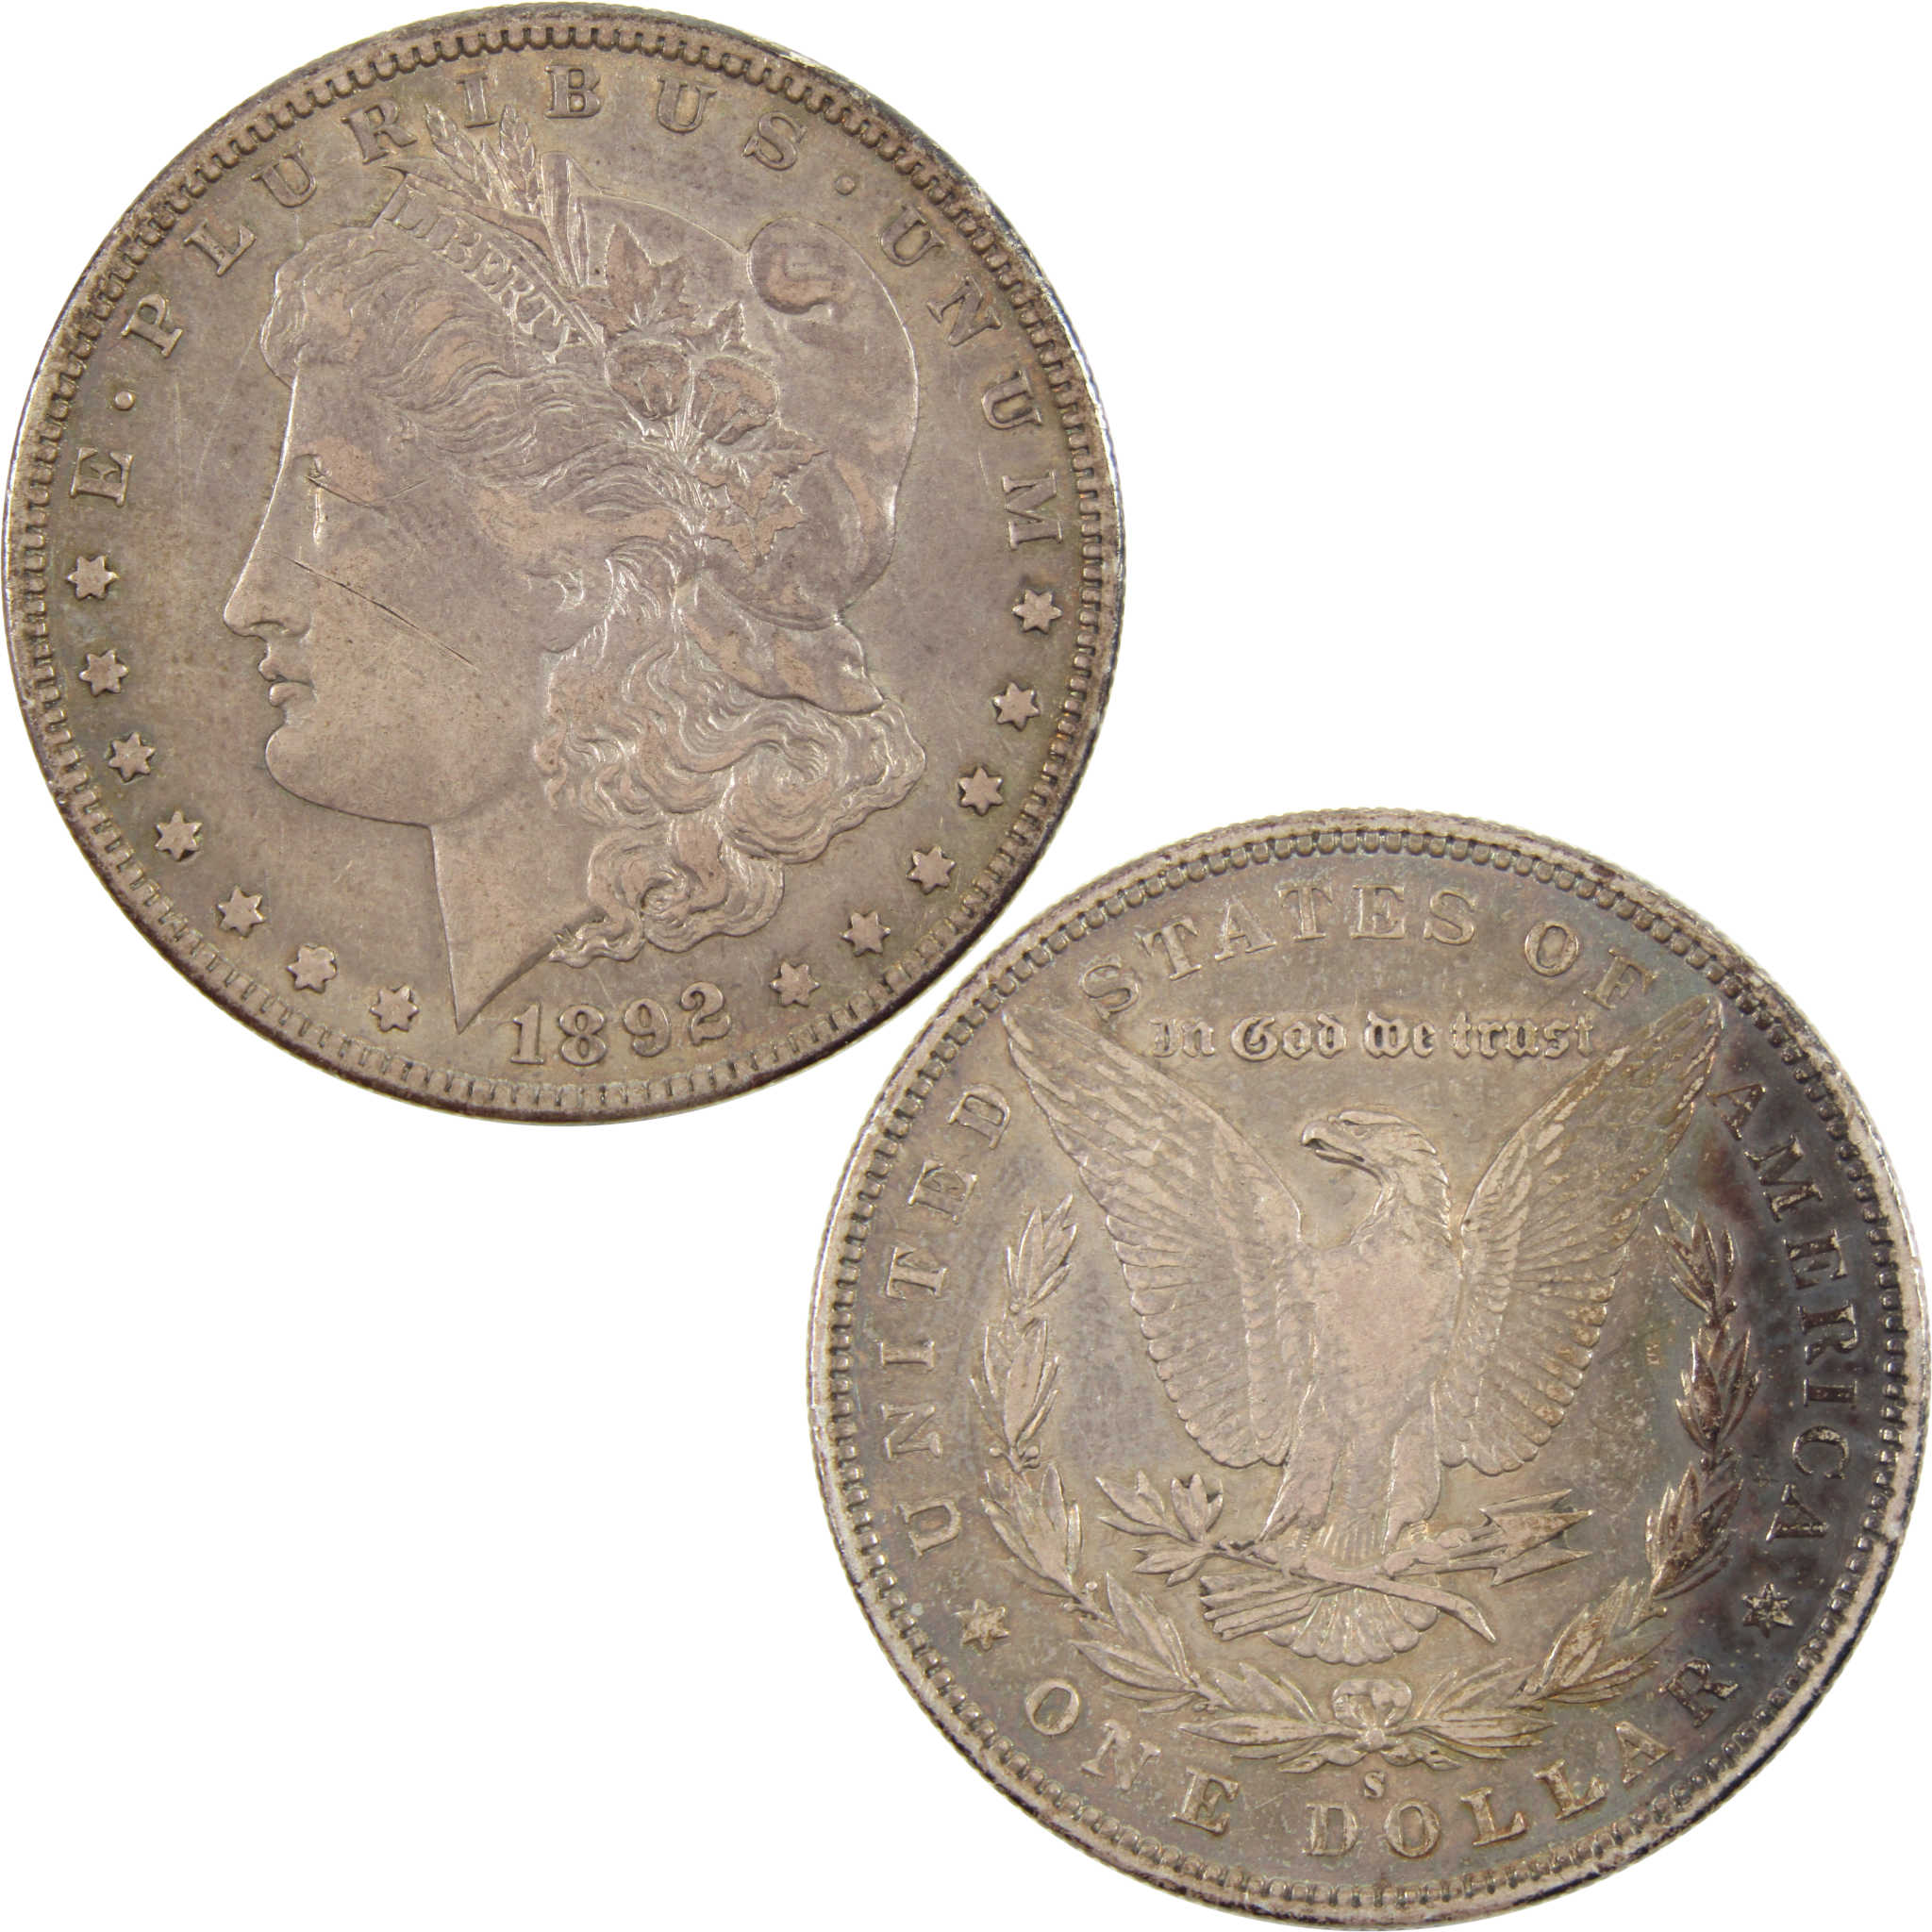 1892 S Morgan Dollar XF EF 90% Silver $1 Coin SKU:I11176 - Morgan coin - Morgan silver dollar - Morgan silver dollar for sale - Profile Coins &amp; Collectibles